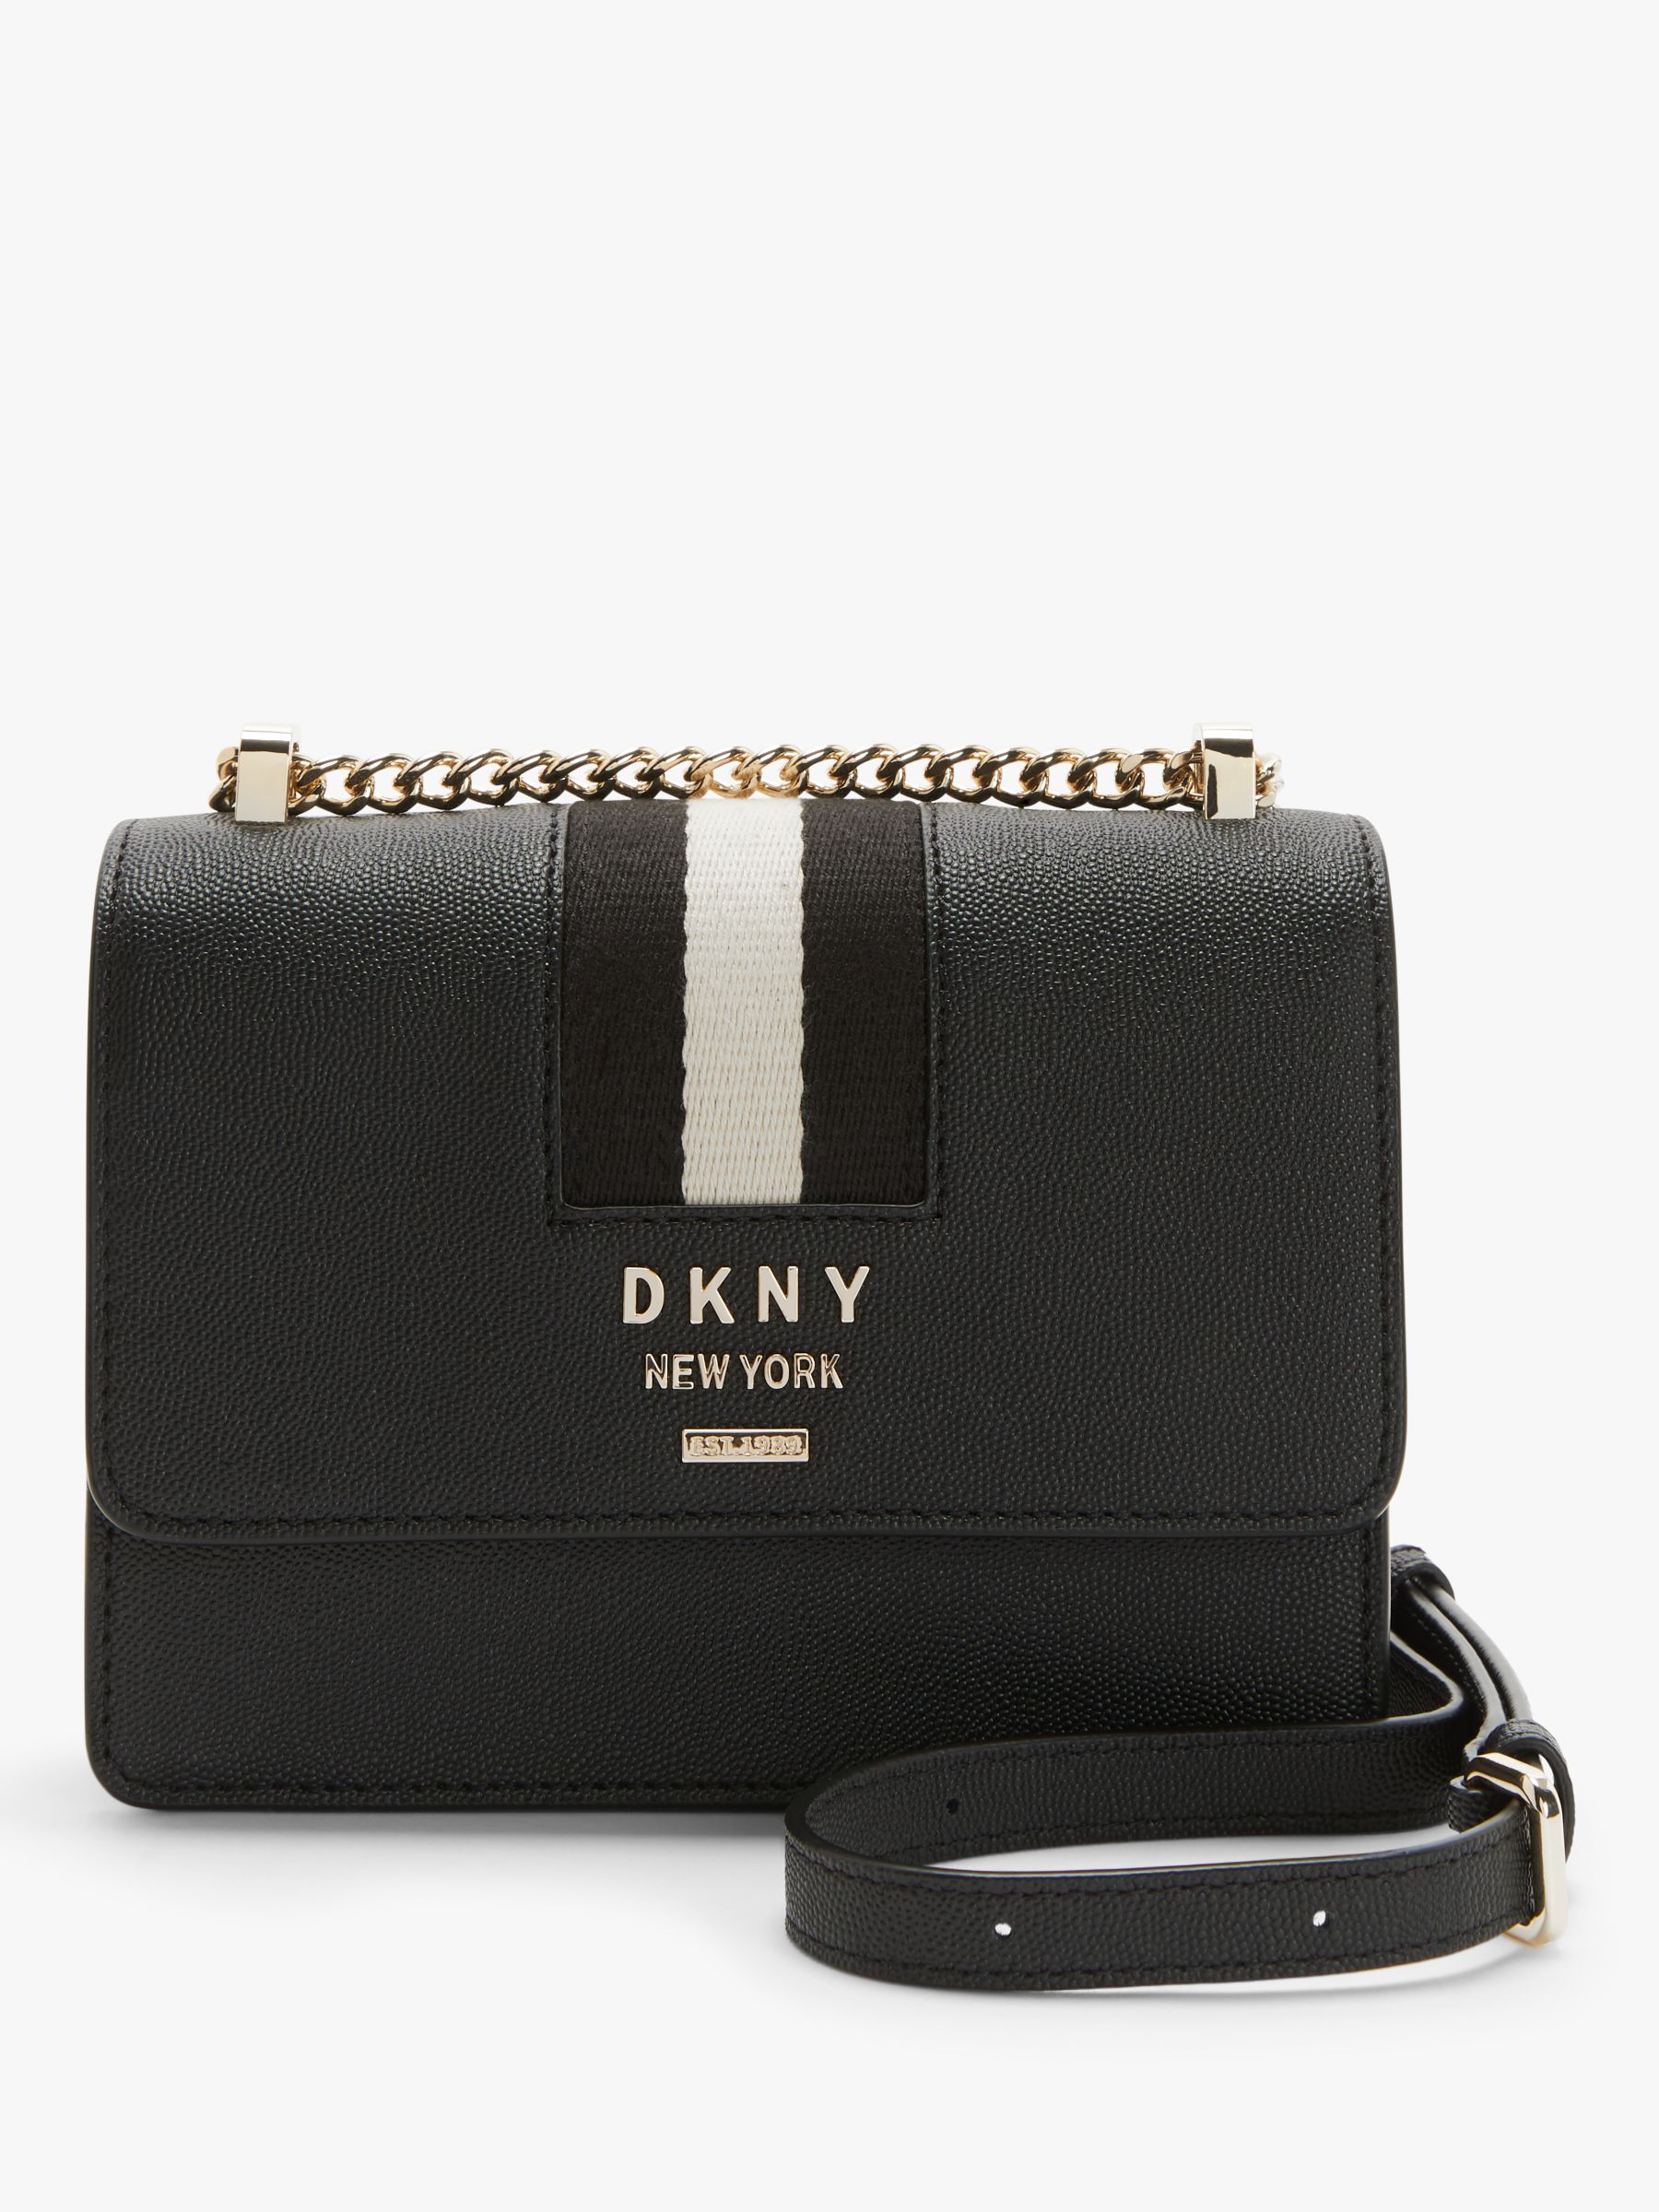 dkny cheap handbags